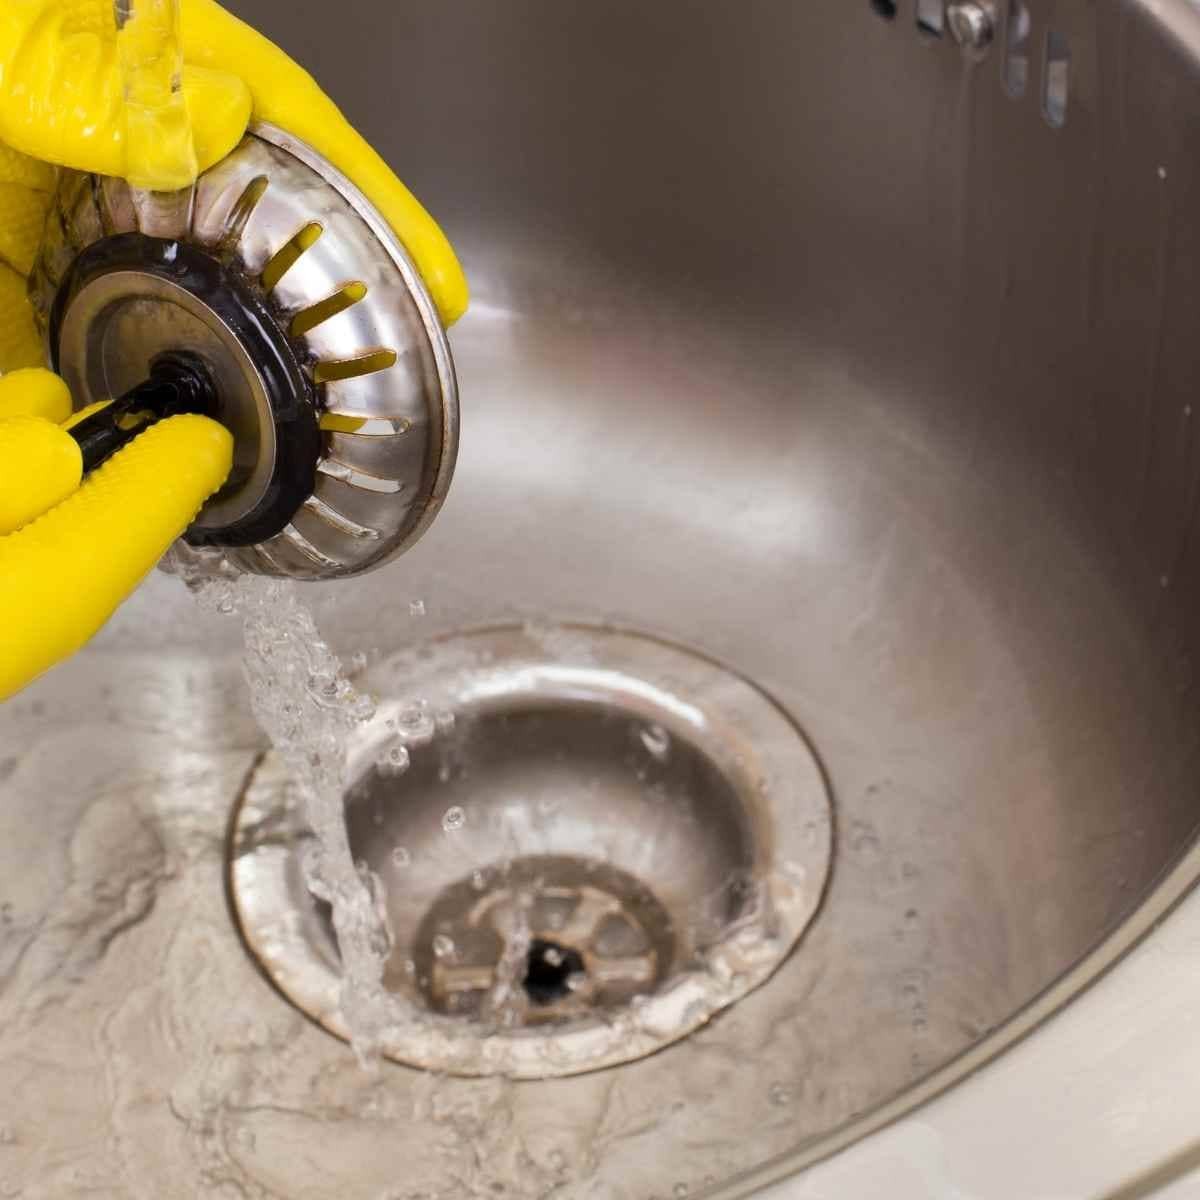 Comment faire pour bien nettoyer ses canalisations ? - Proxi